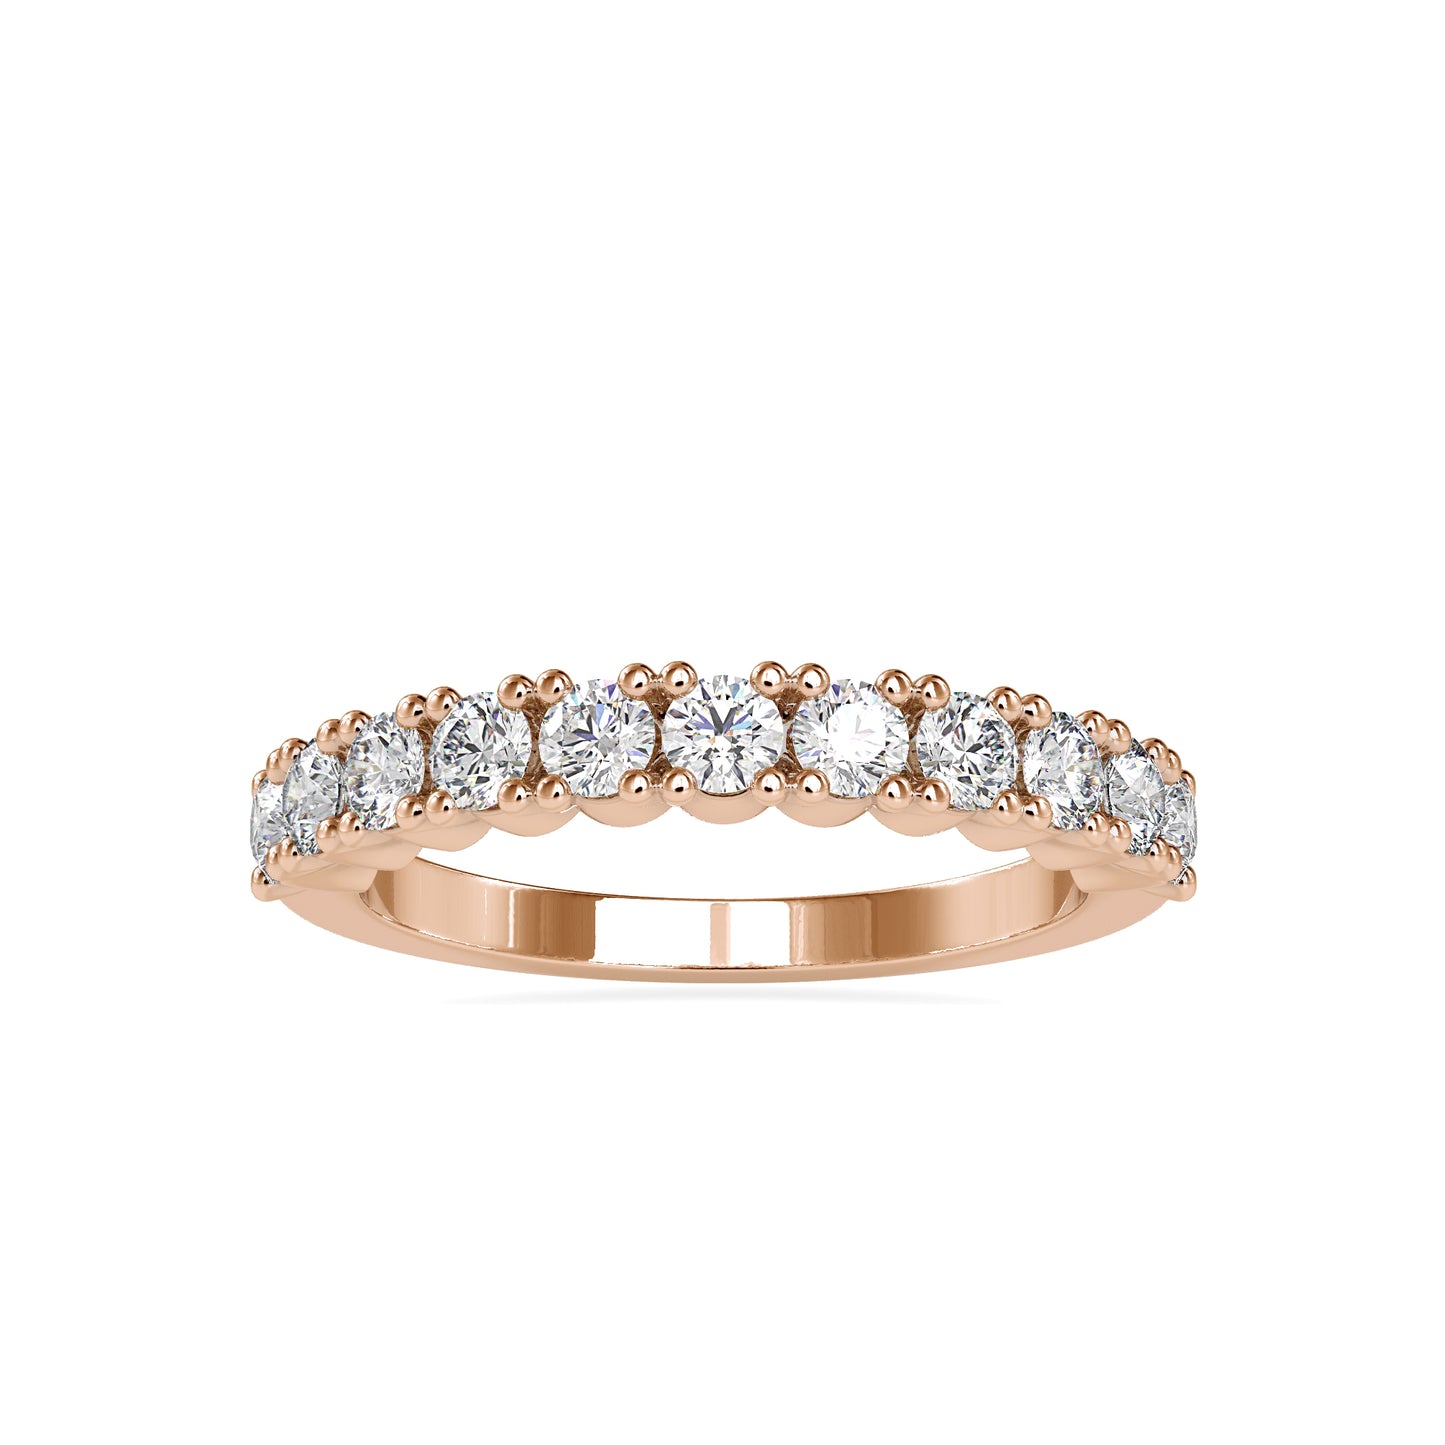 The Titania Moissanite Diamond Ring - Vai Ra